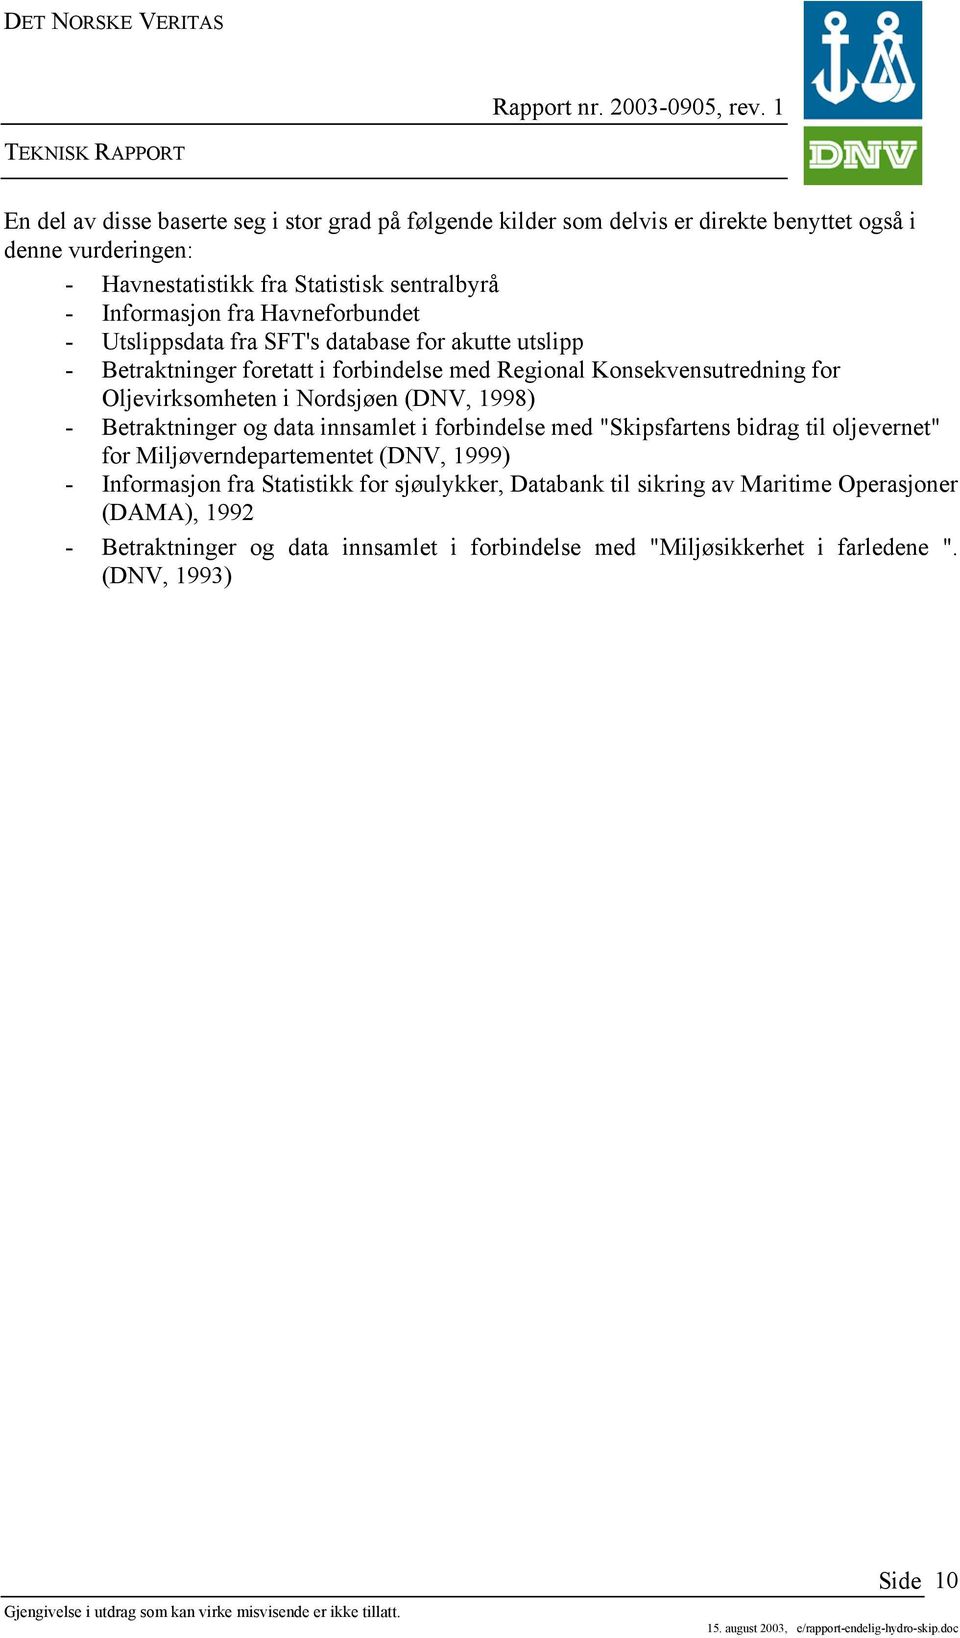 Oljevirksomheten i Nordsjøen (DNV, 1998) - Betraktninger og data innsamlet i forbindelse med "Skipsfartens bidrag til oljevernet" for Miljøverndepartementet (DNV, 1999) -